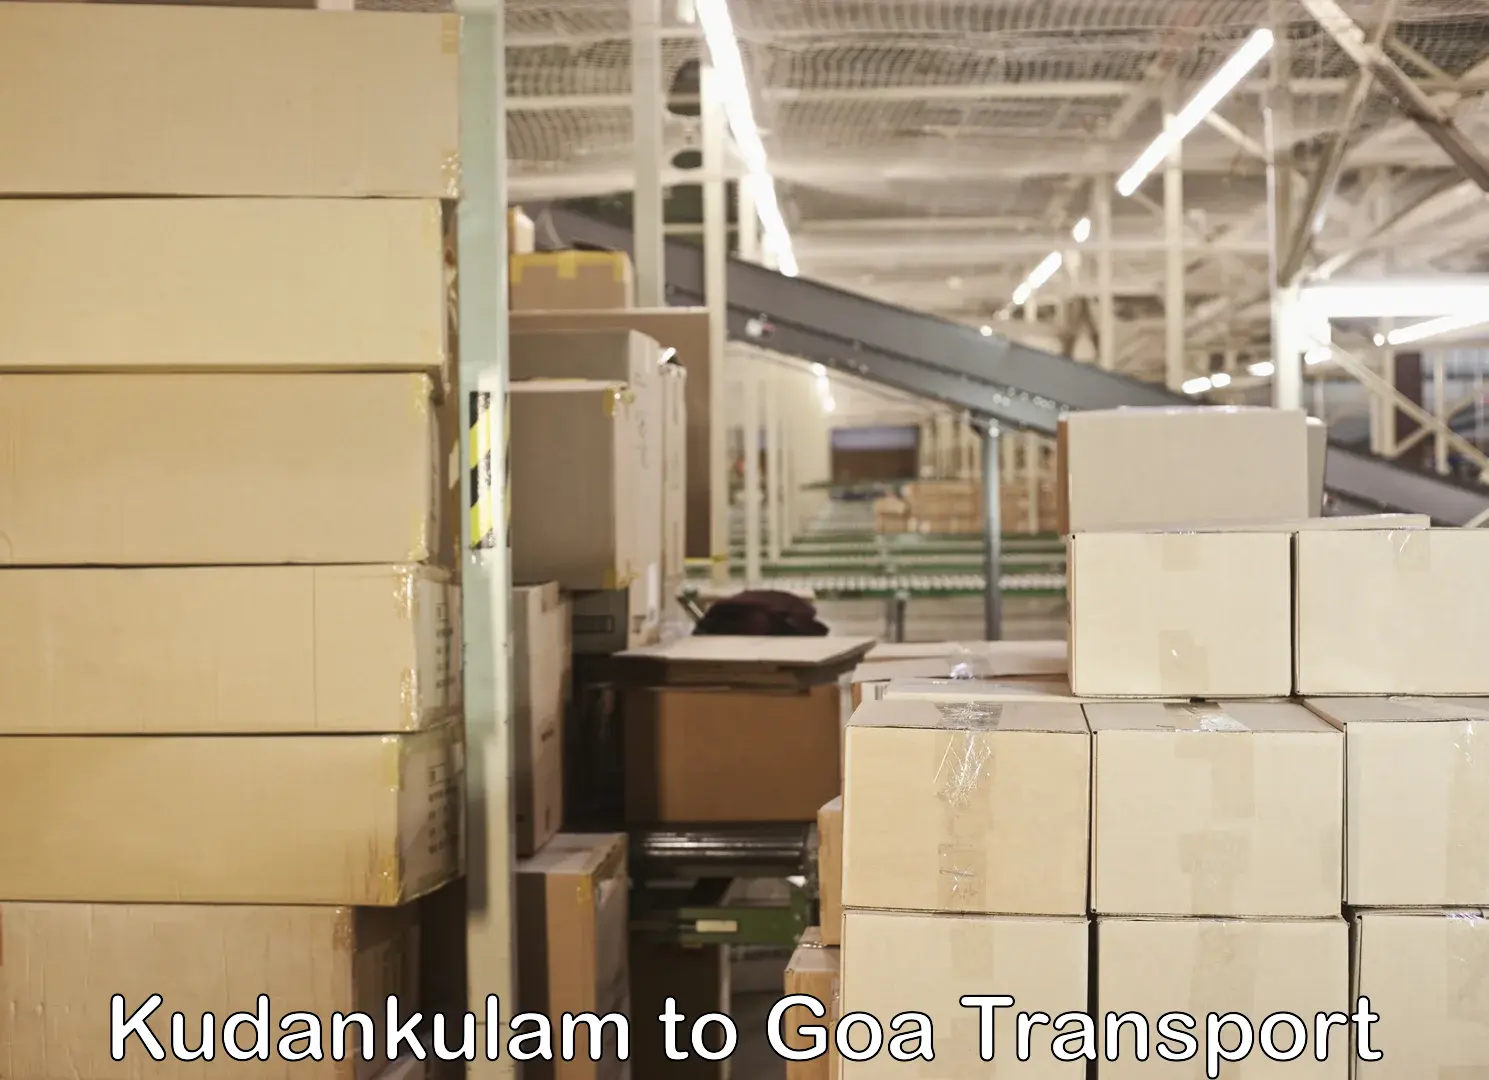 Truck transport companies in India Kudankulam to Vasco da Gama